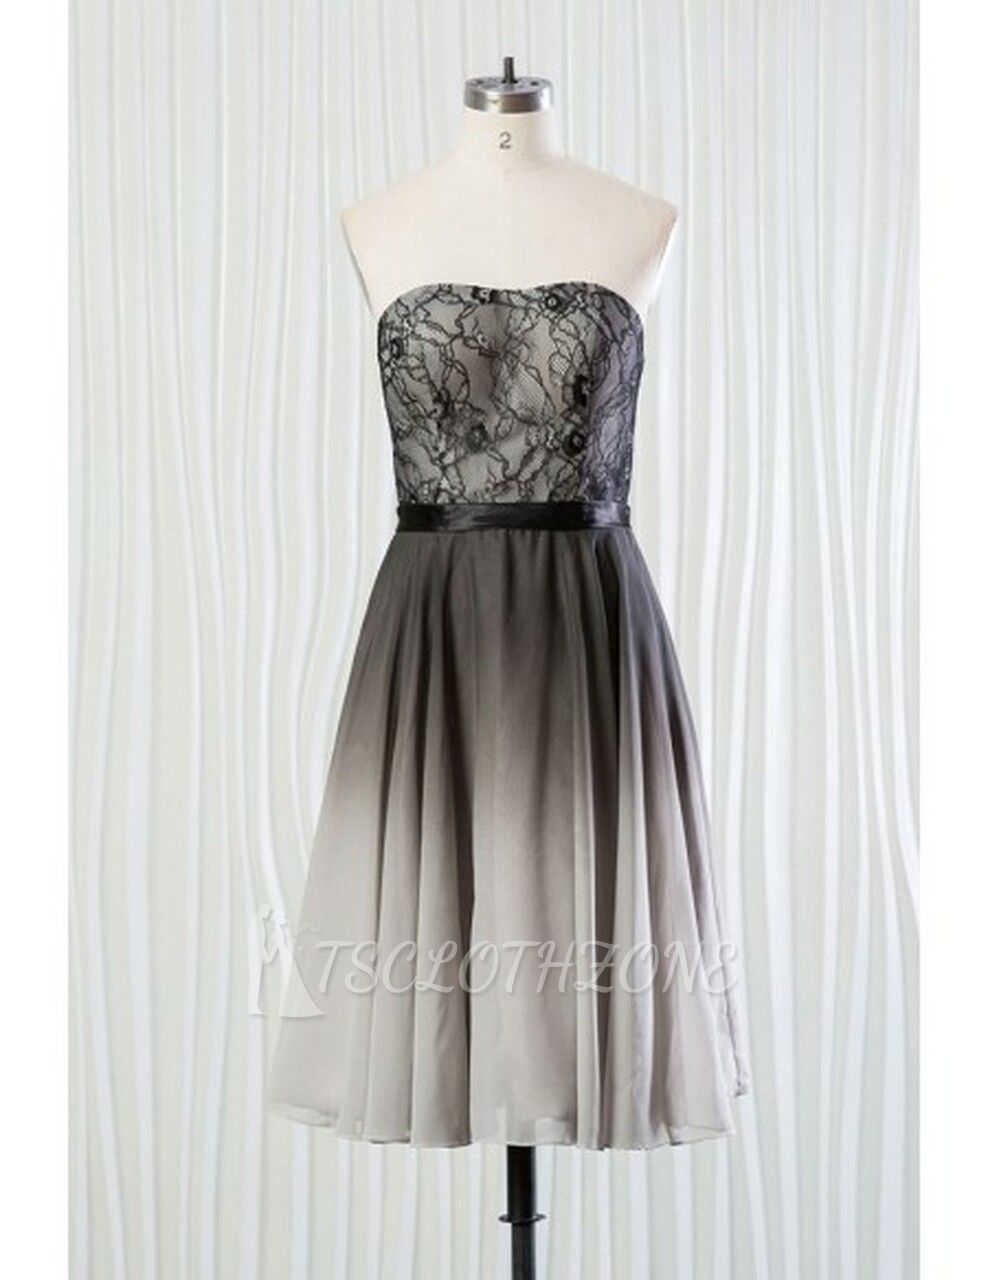 Lace Short Black And Grey Bridesmaid Dress